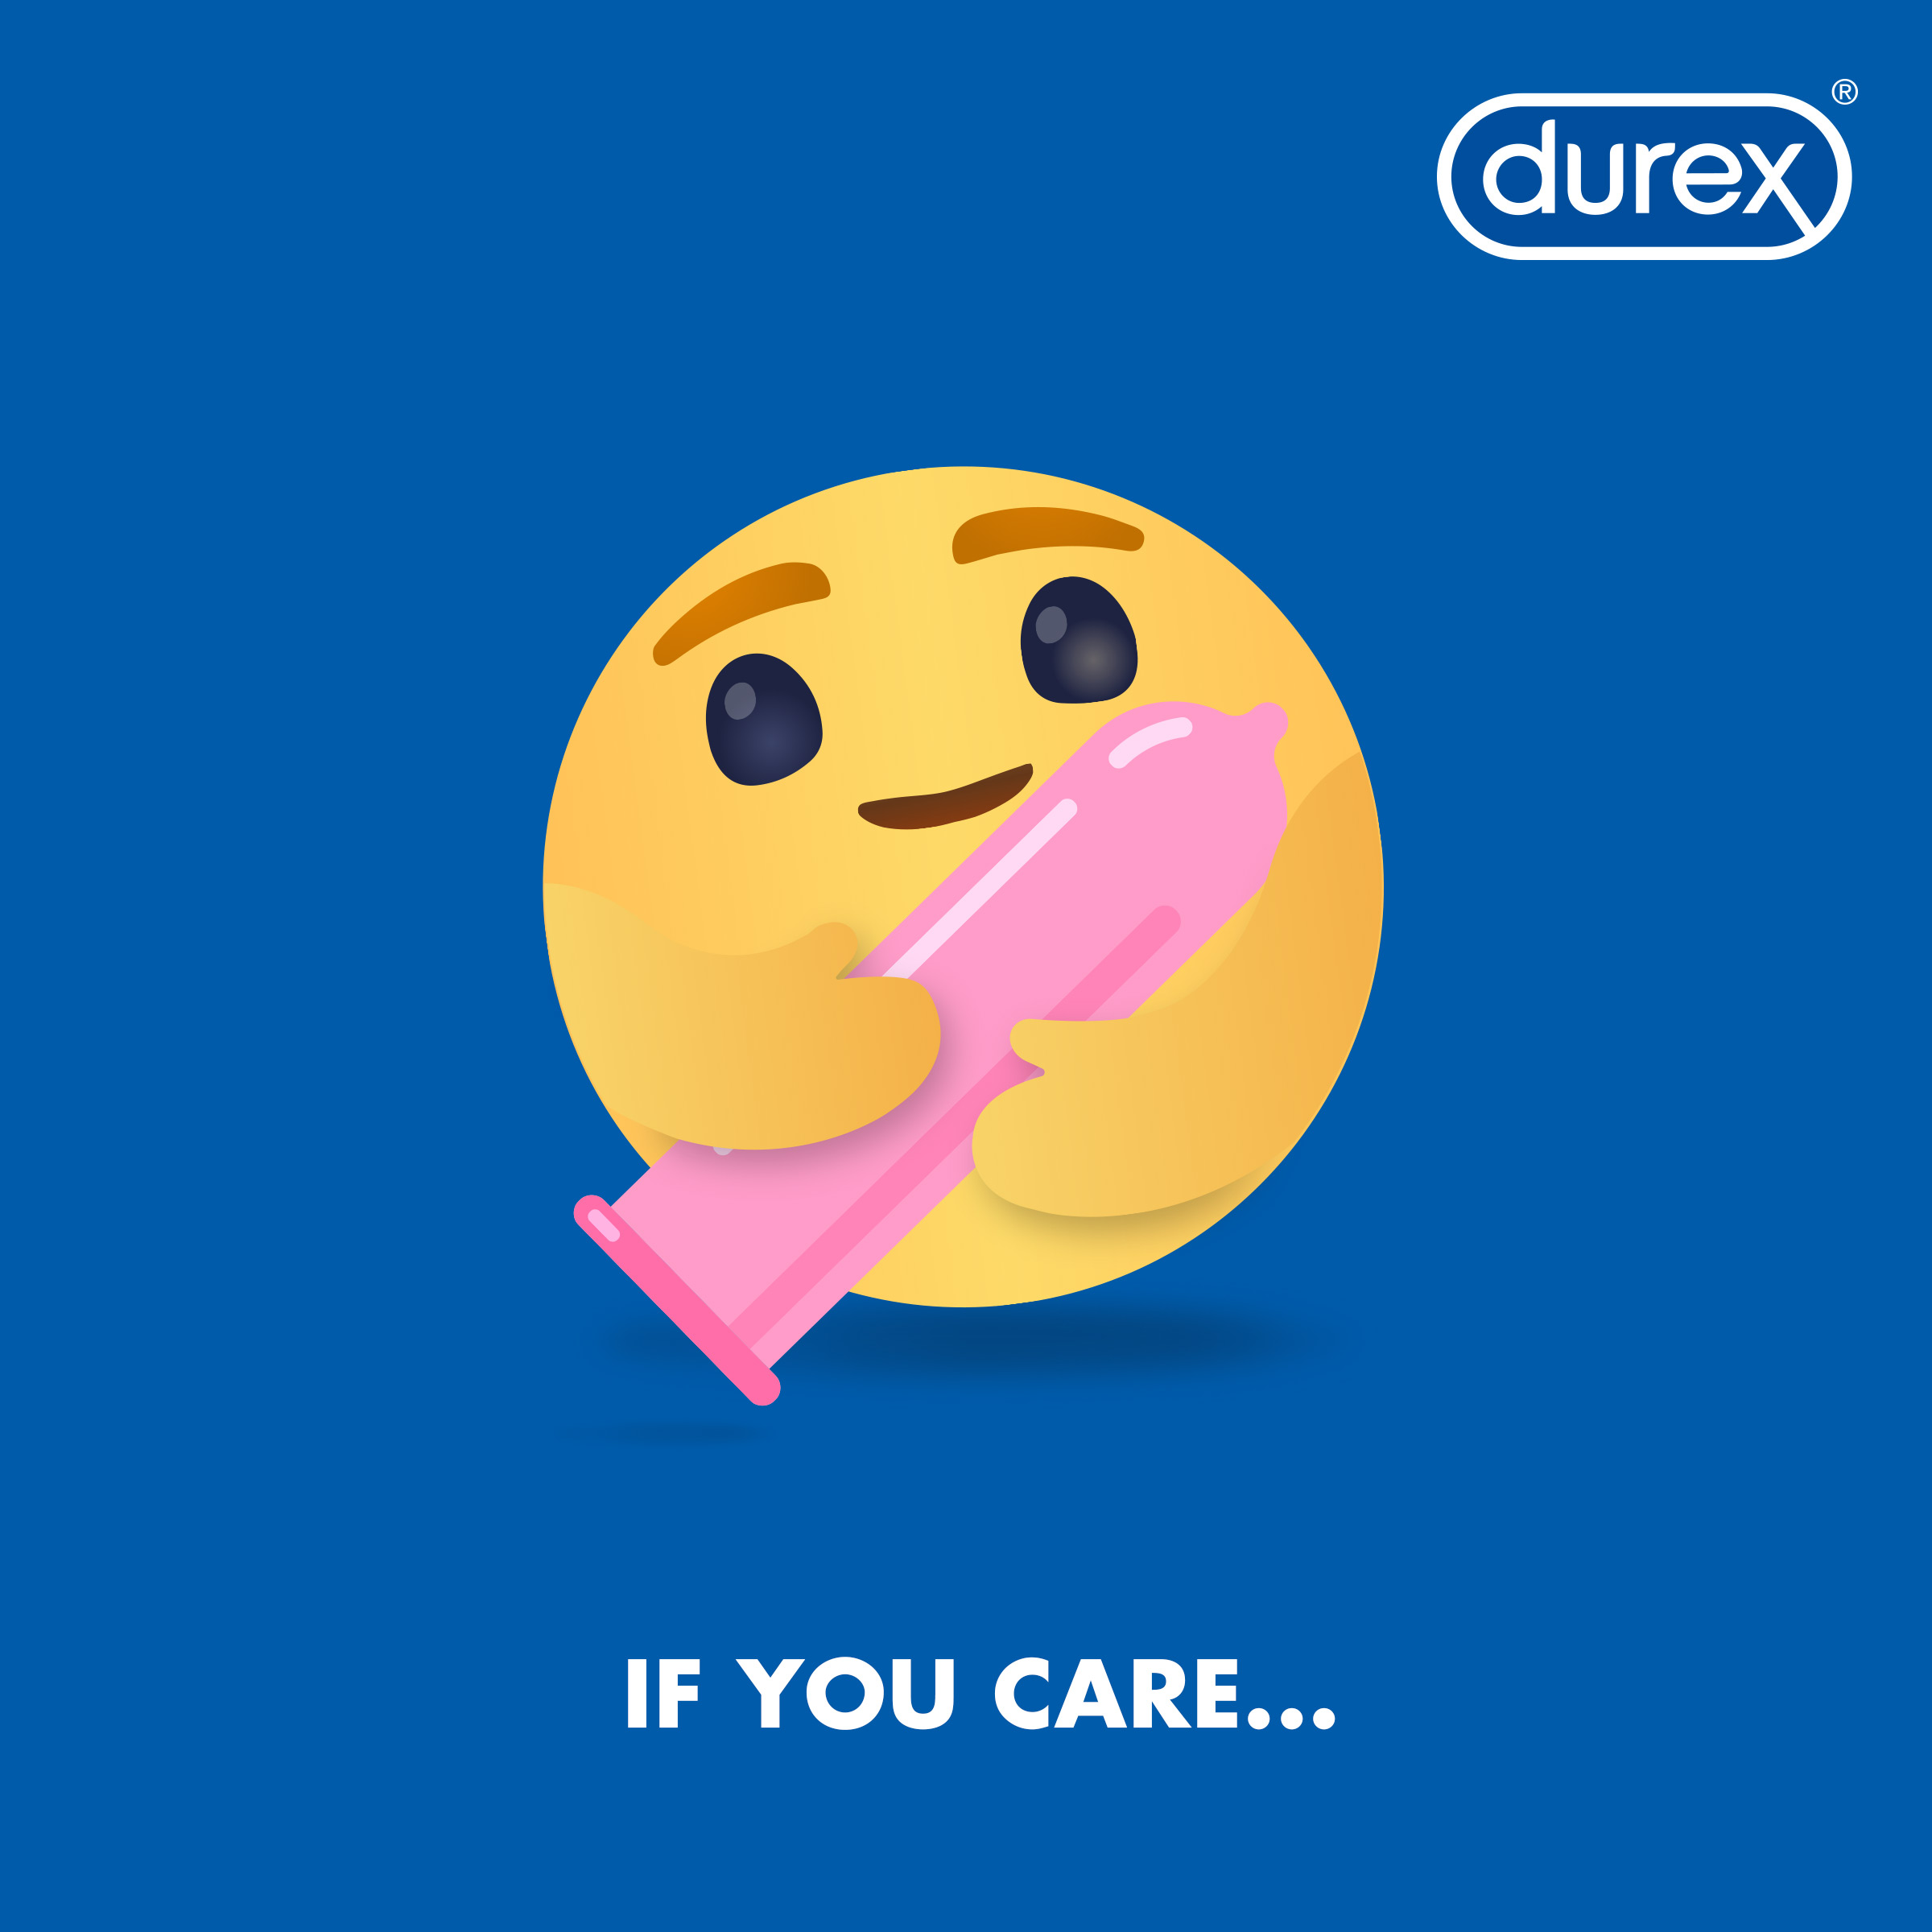 Durex Care Emoji